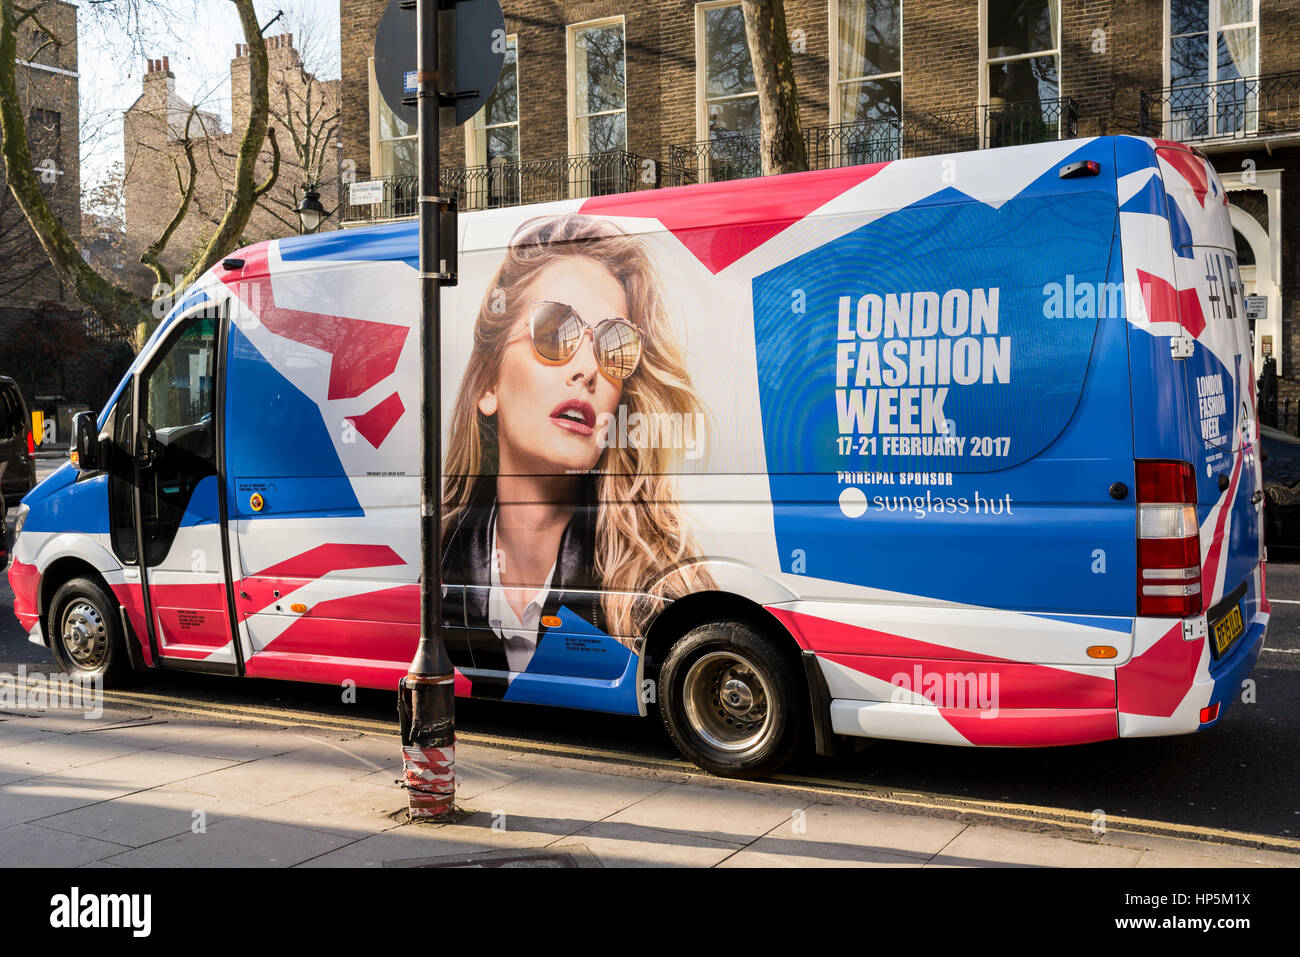 Bloomsbury Square, London, UK - 18 février 2017. livraison van enveloppé dans la conception officielle de la London fashion week et son sponsor principal Sunglass Hut. London fashion week est un salon d'habillement tenue à Londres deux fois par an, en février et septembre. crédit : nicola ferrari/Alamy live news Banque D'Images